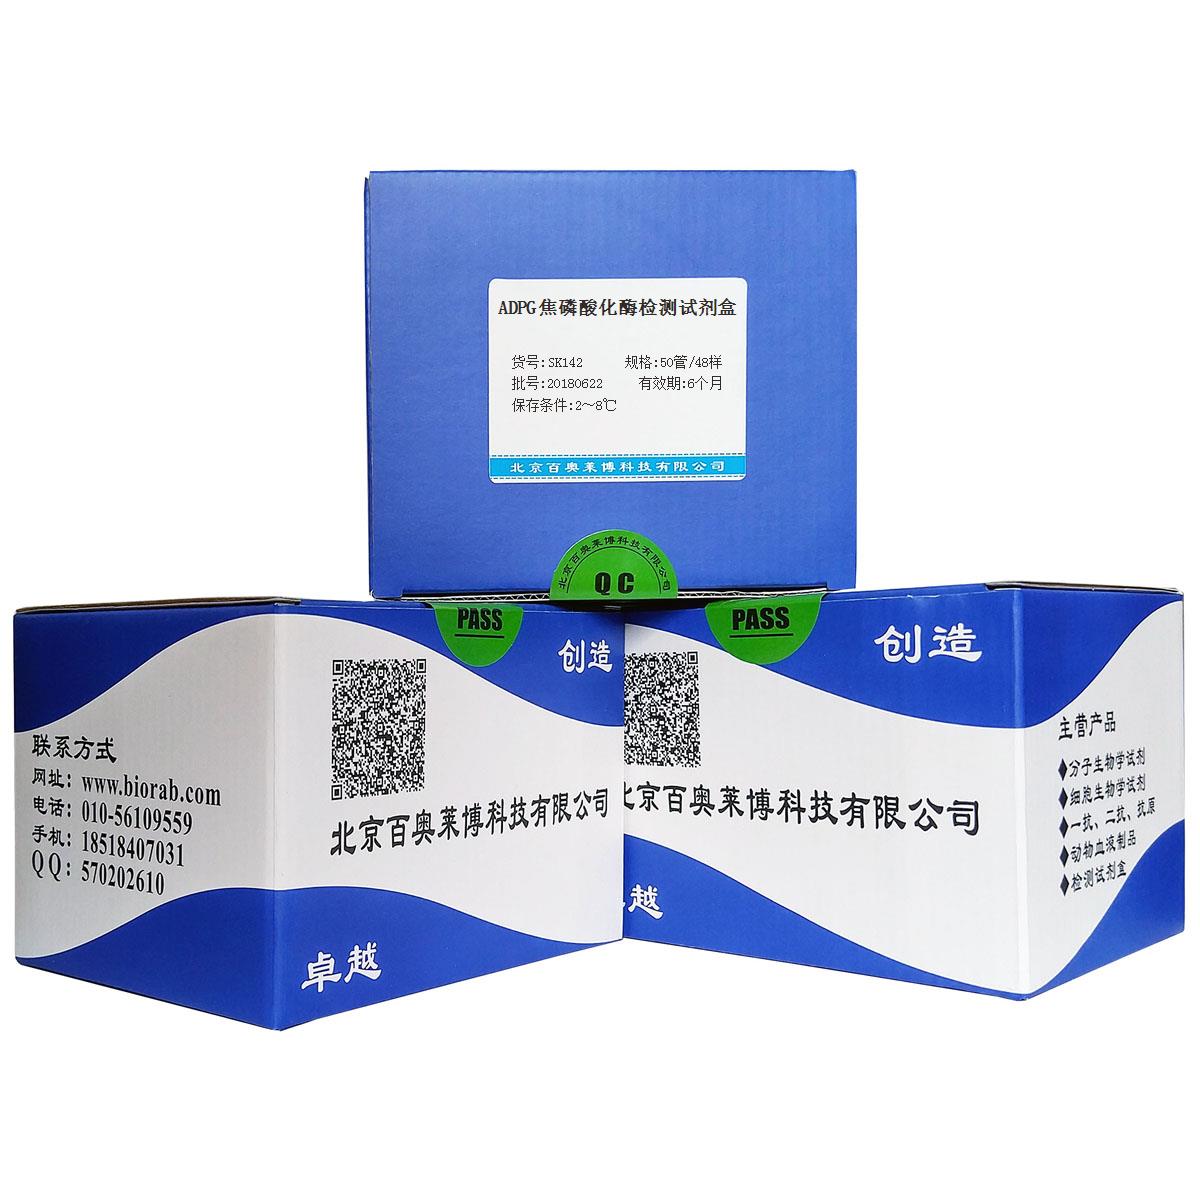 ADPG焦磷酸化酶检测试剂盒 生化检测试剂盒